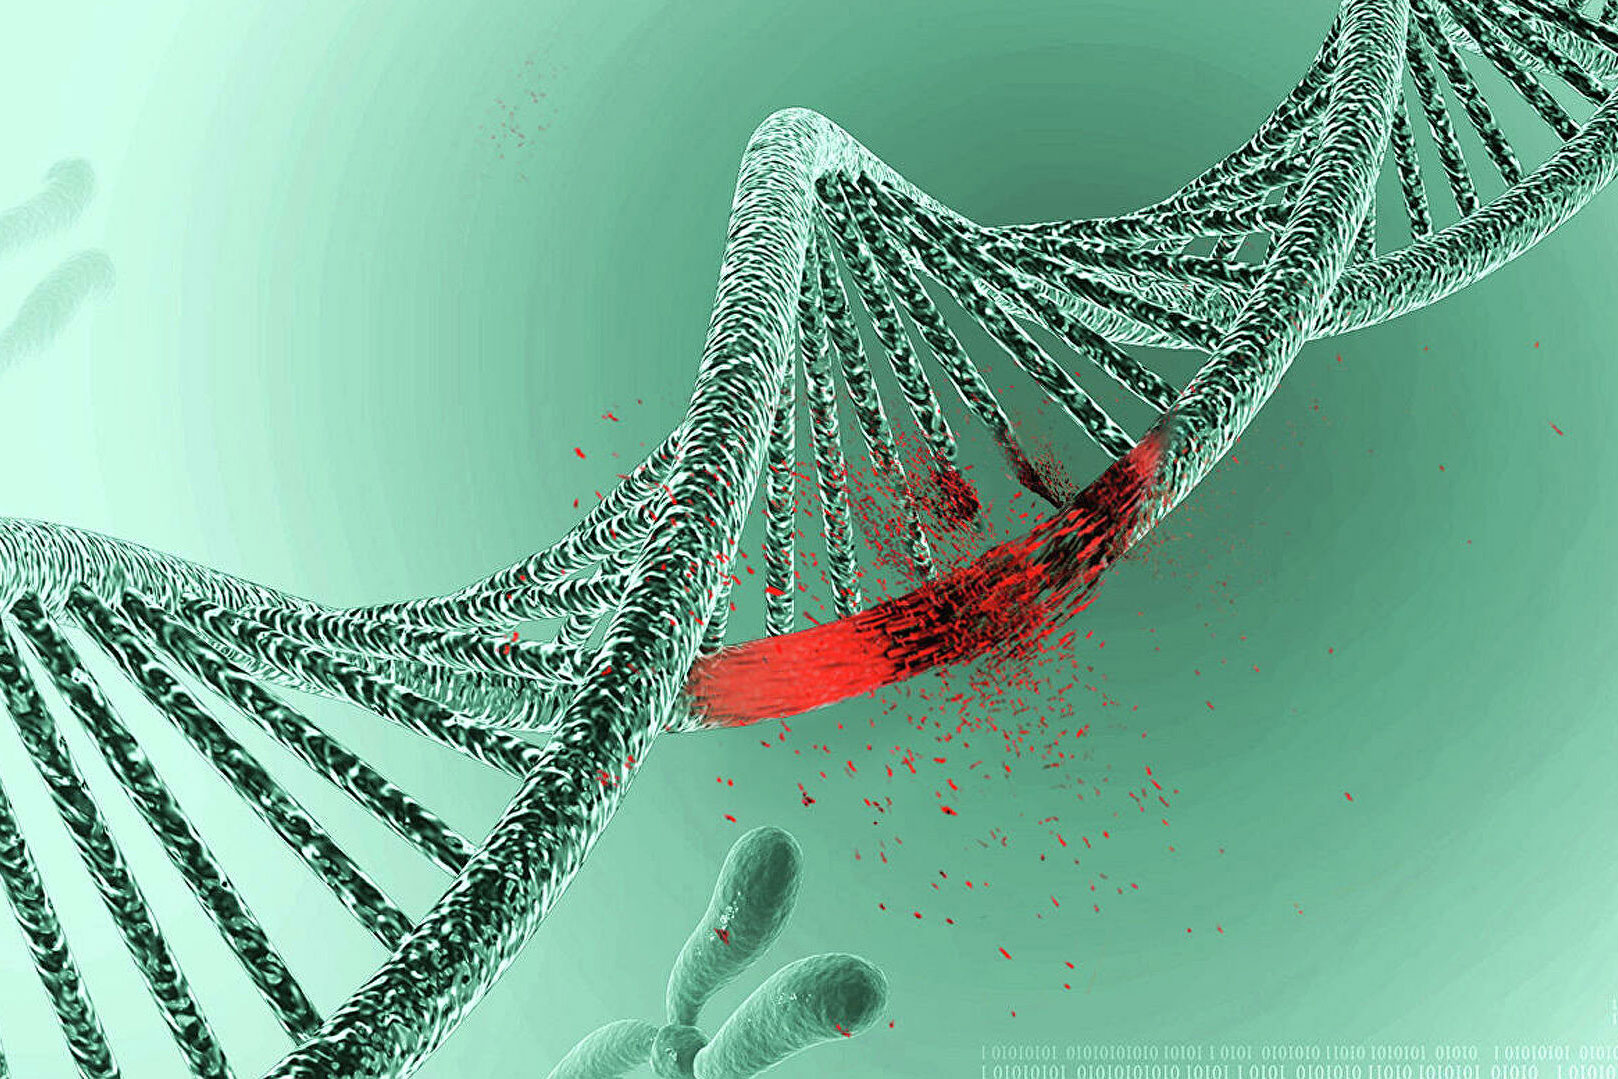 Գիտնականները ստուգել են, թե արդյոք կորոնավիրուսը փոփոխություններ է առաջացնում մարդու ԴՆԹ-ում